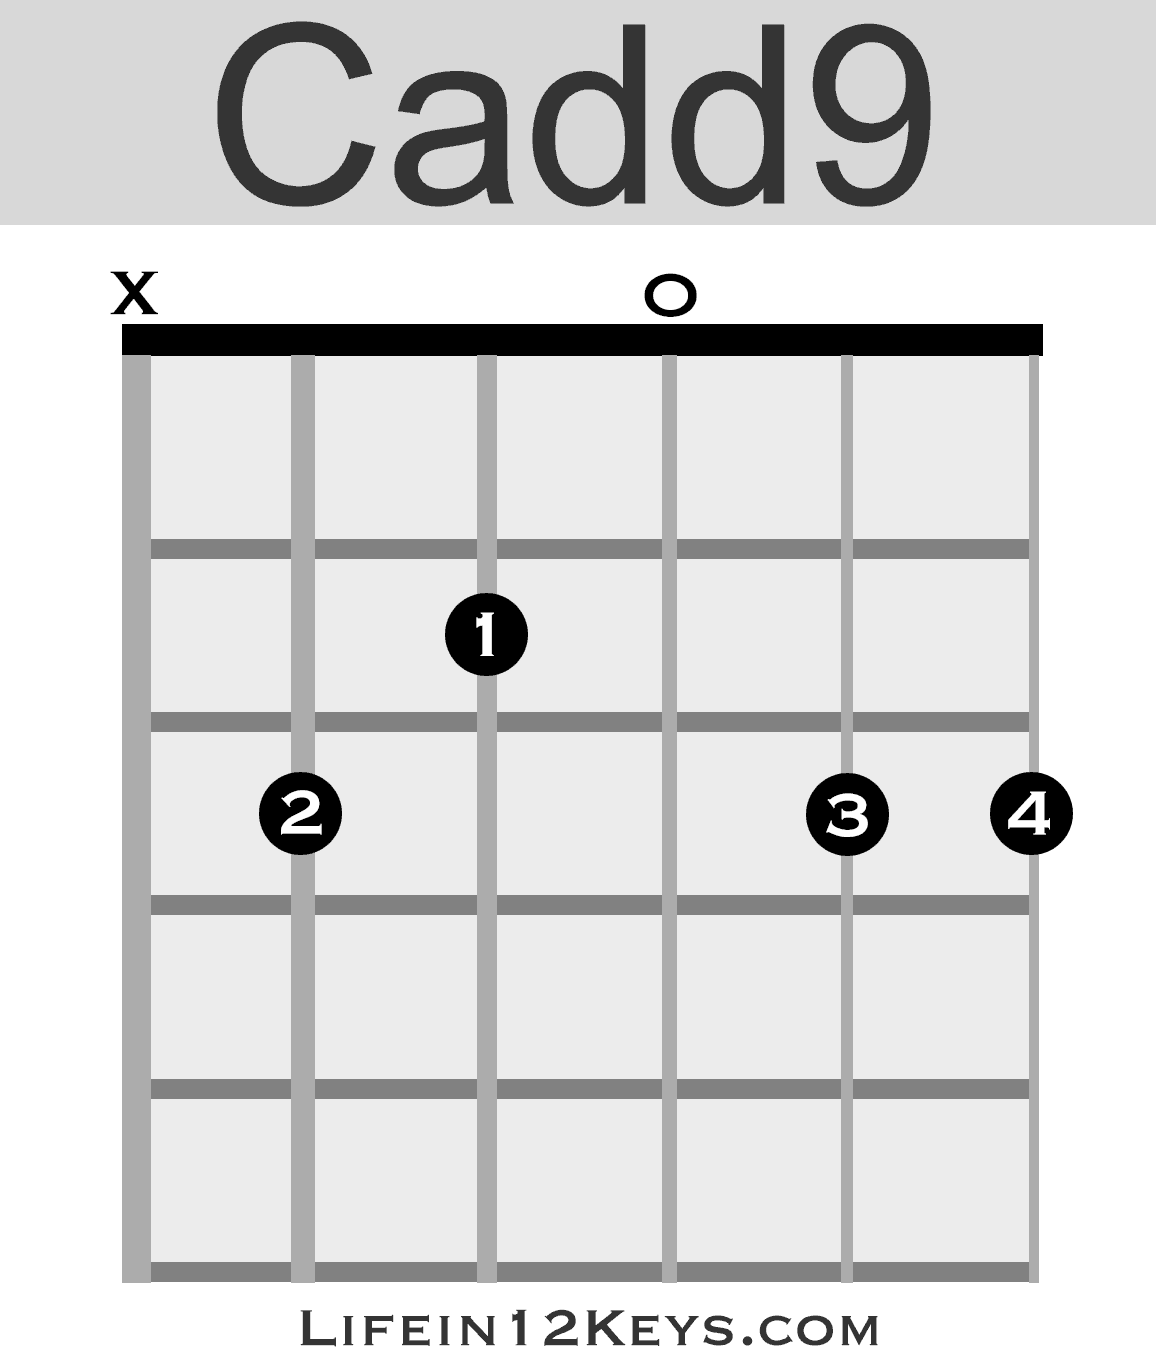 Cadd9 Piano